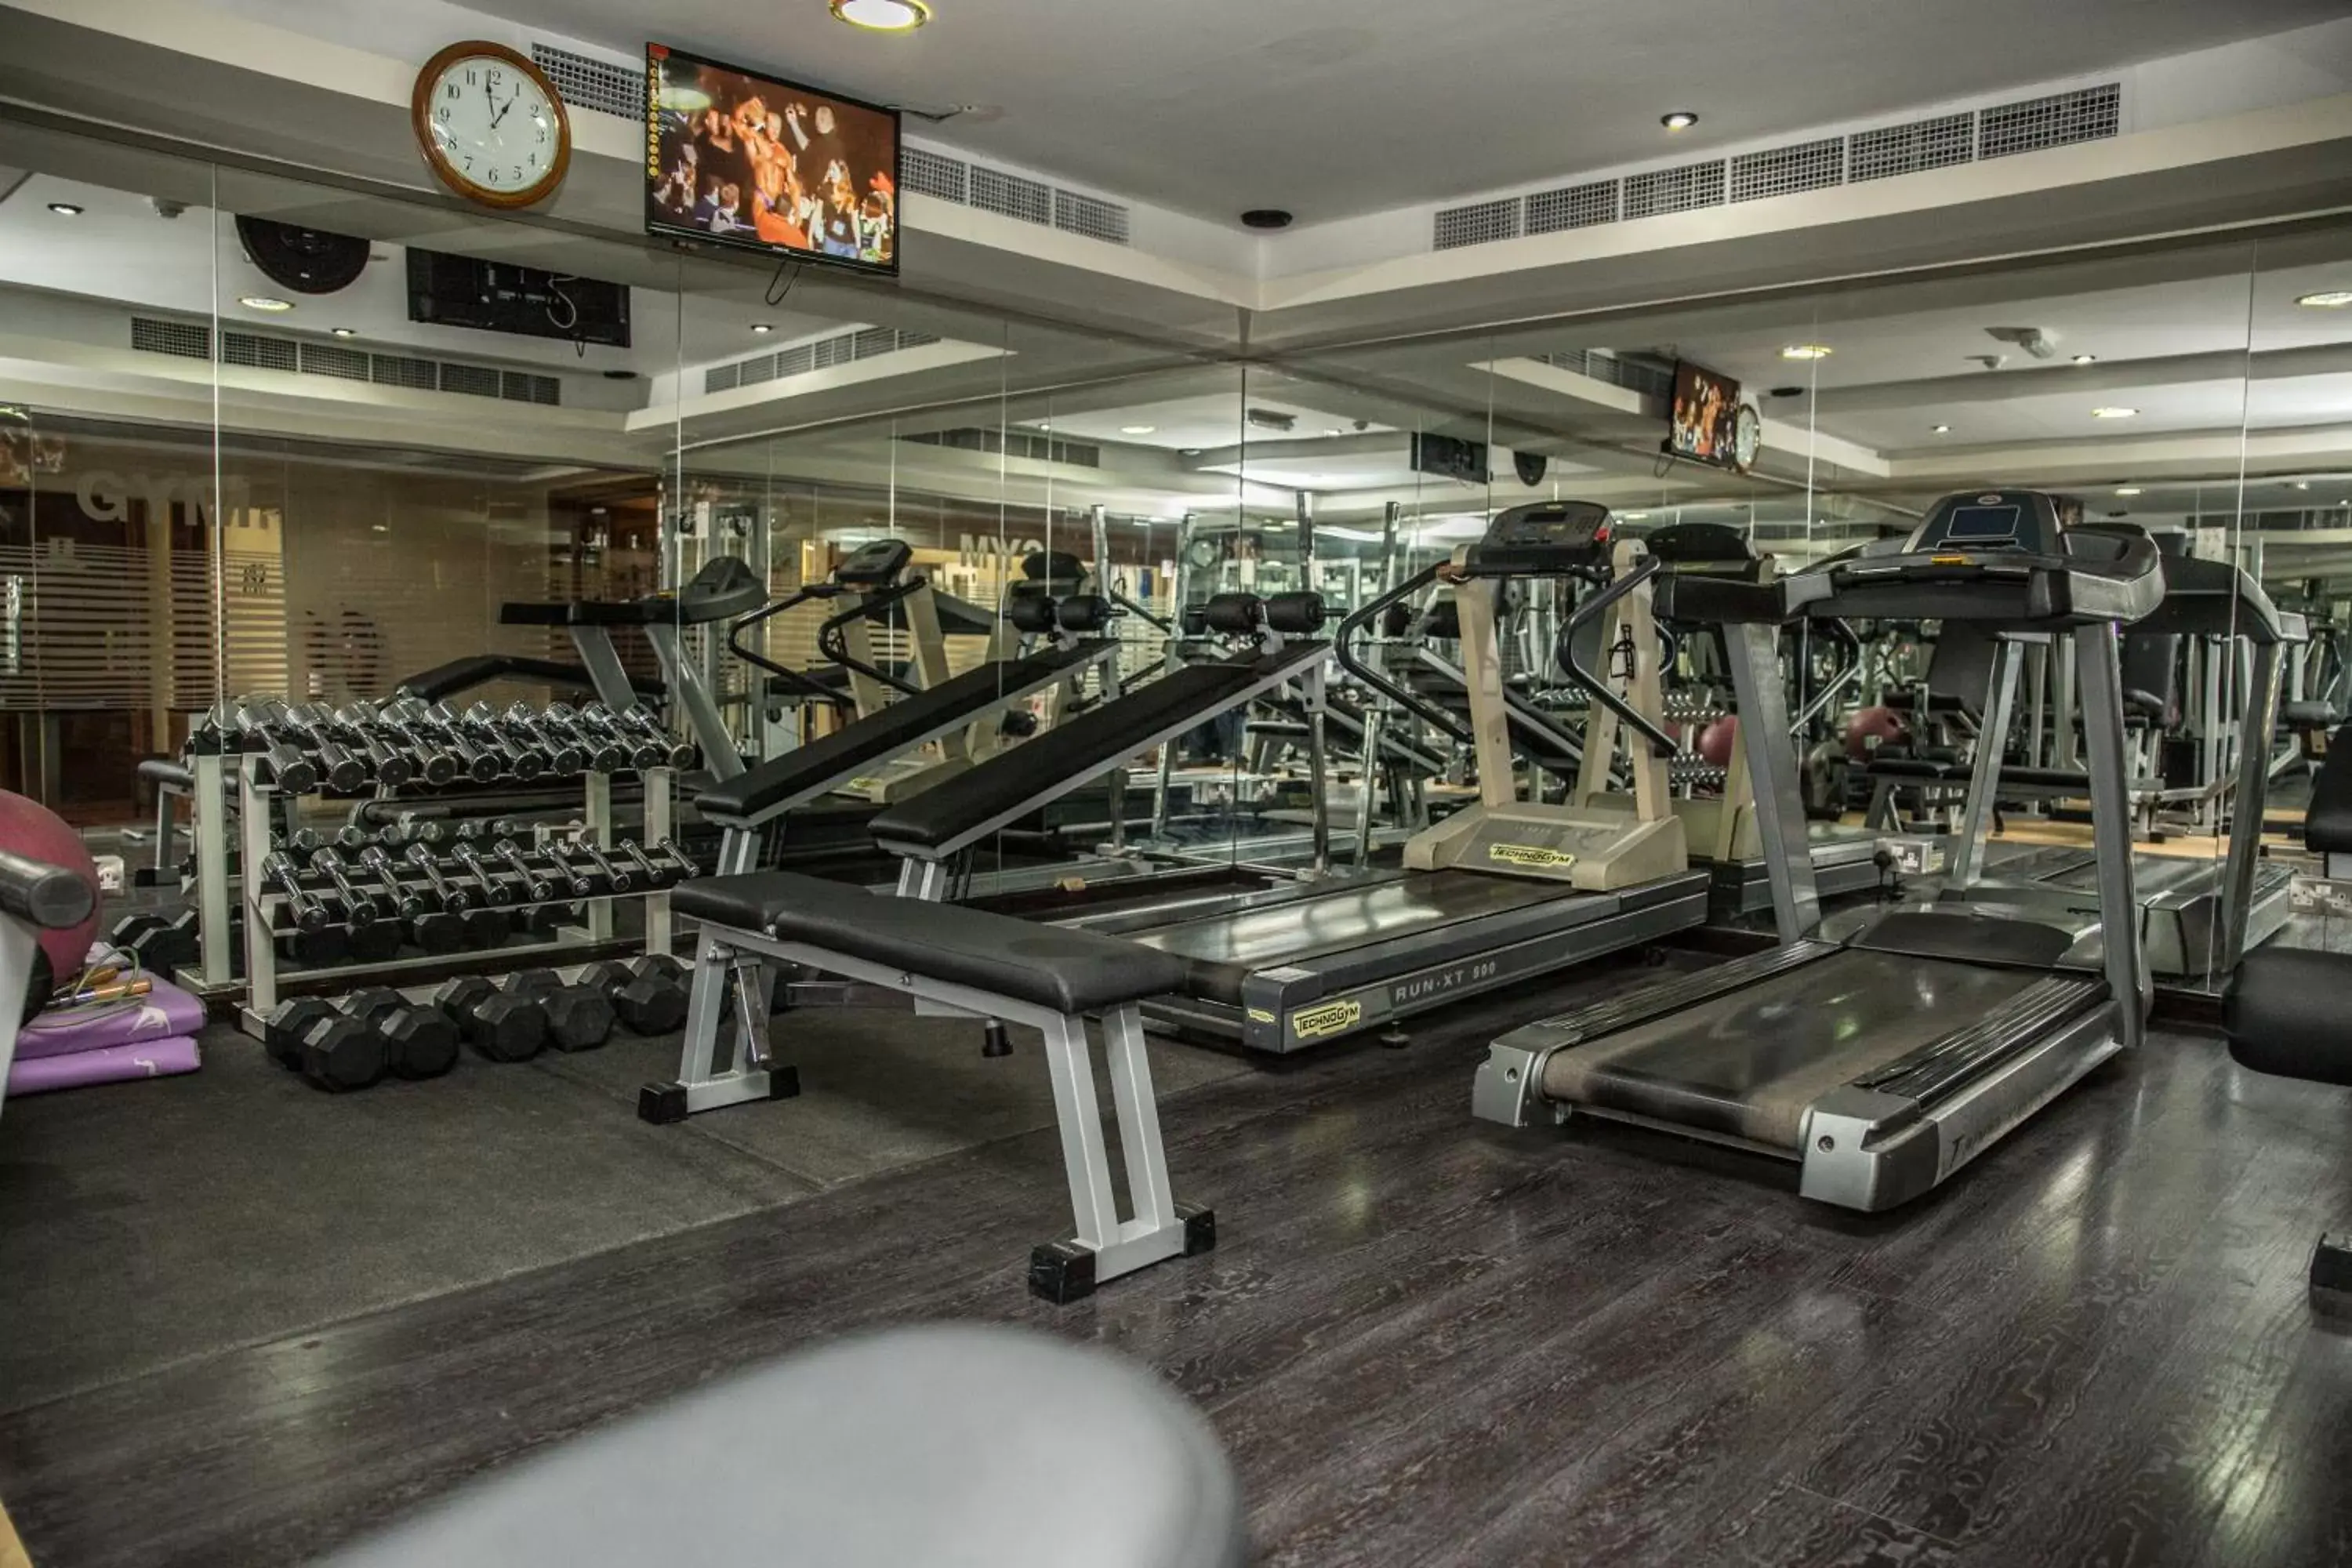 Fitness centre/facilities, Fitness Center/Facilities in Saffron Boutique Hotel